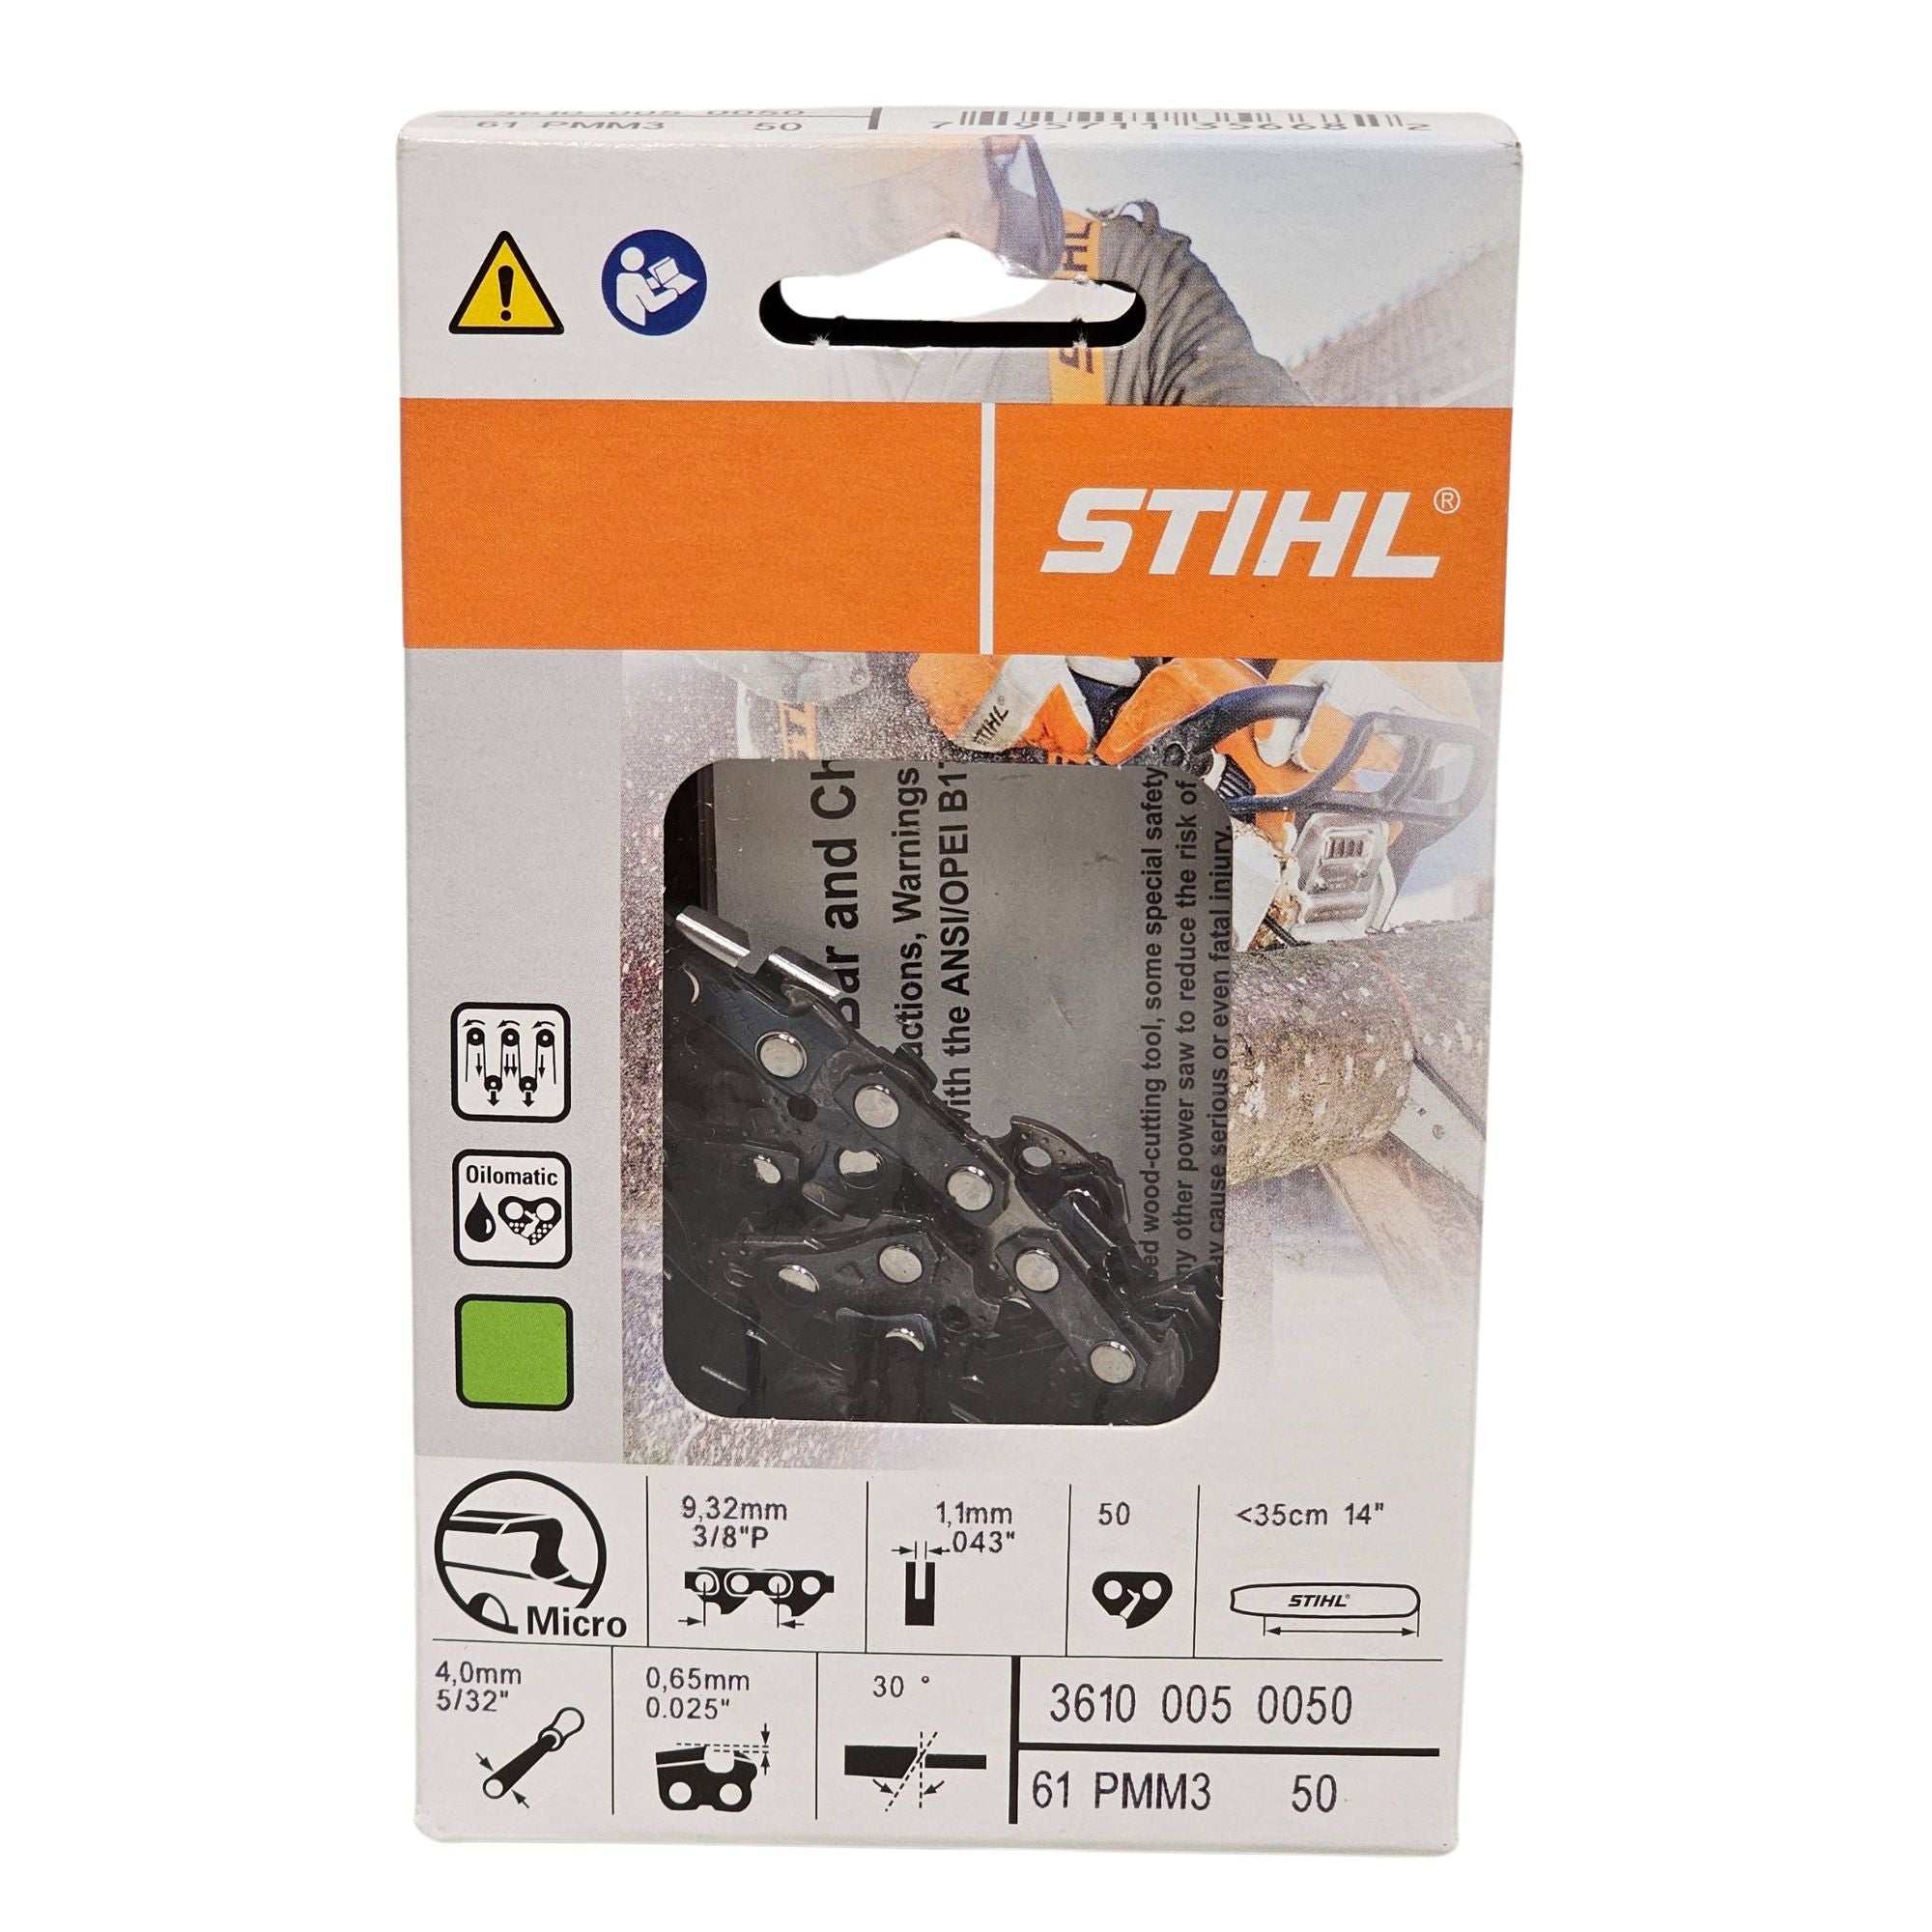 BULK || Stihl Oilomatic Picco Micro Mini 3 | 61 PMM3 50 | 14 in. | 50 Drive Links | Chainsaw Chain | 3610 005 0050